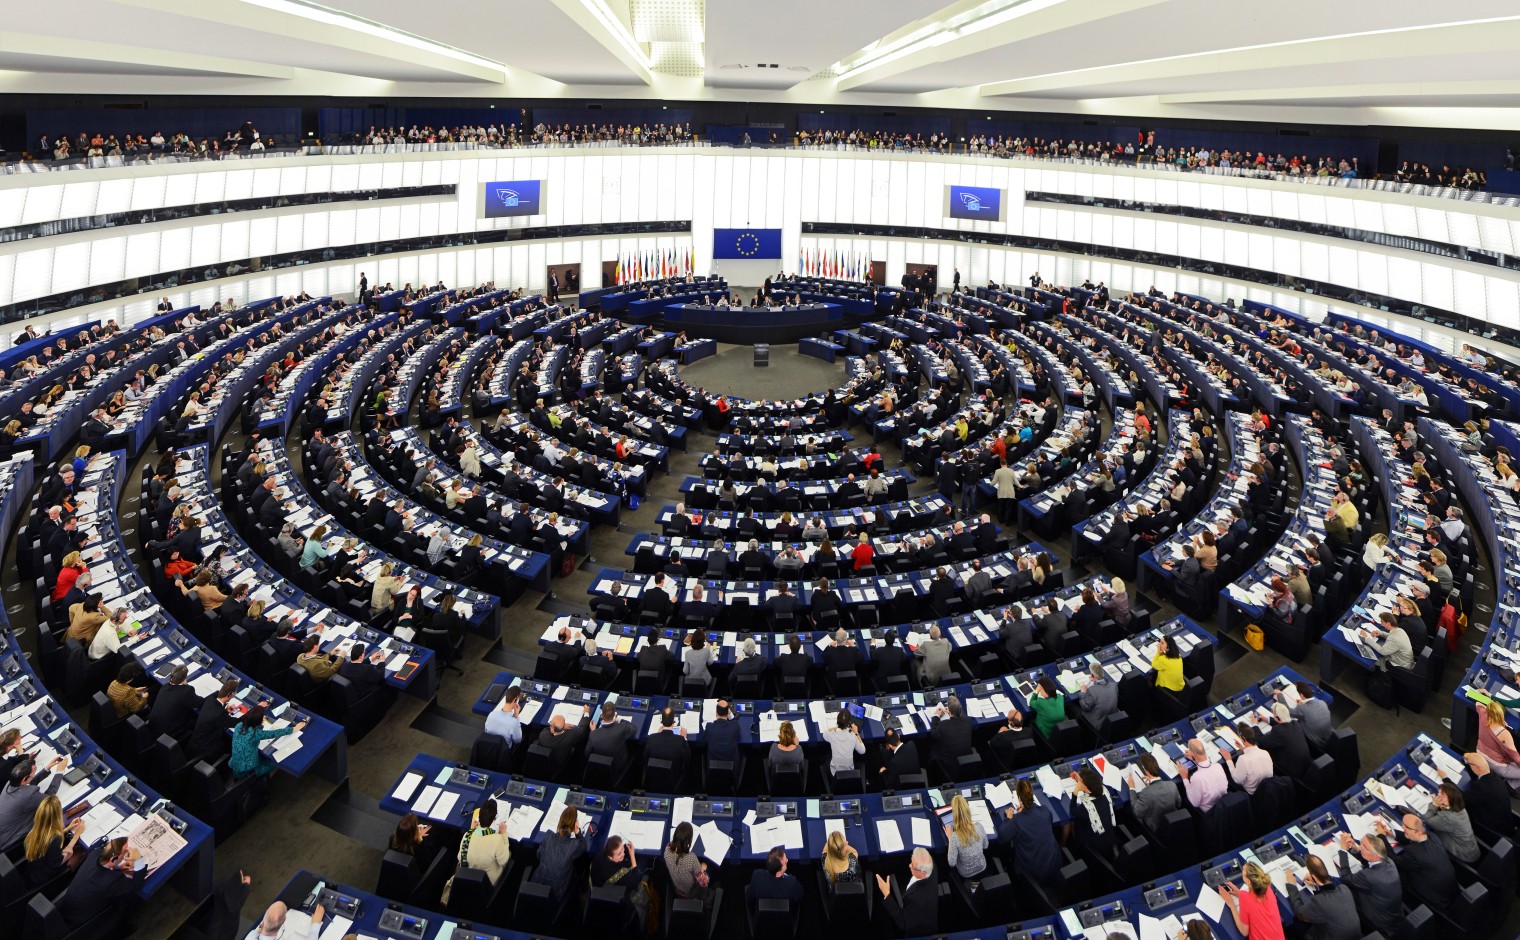 Plenaire zaal van het Europees Parlement, ter illustratie